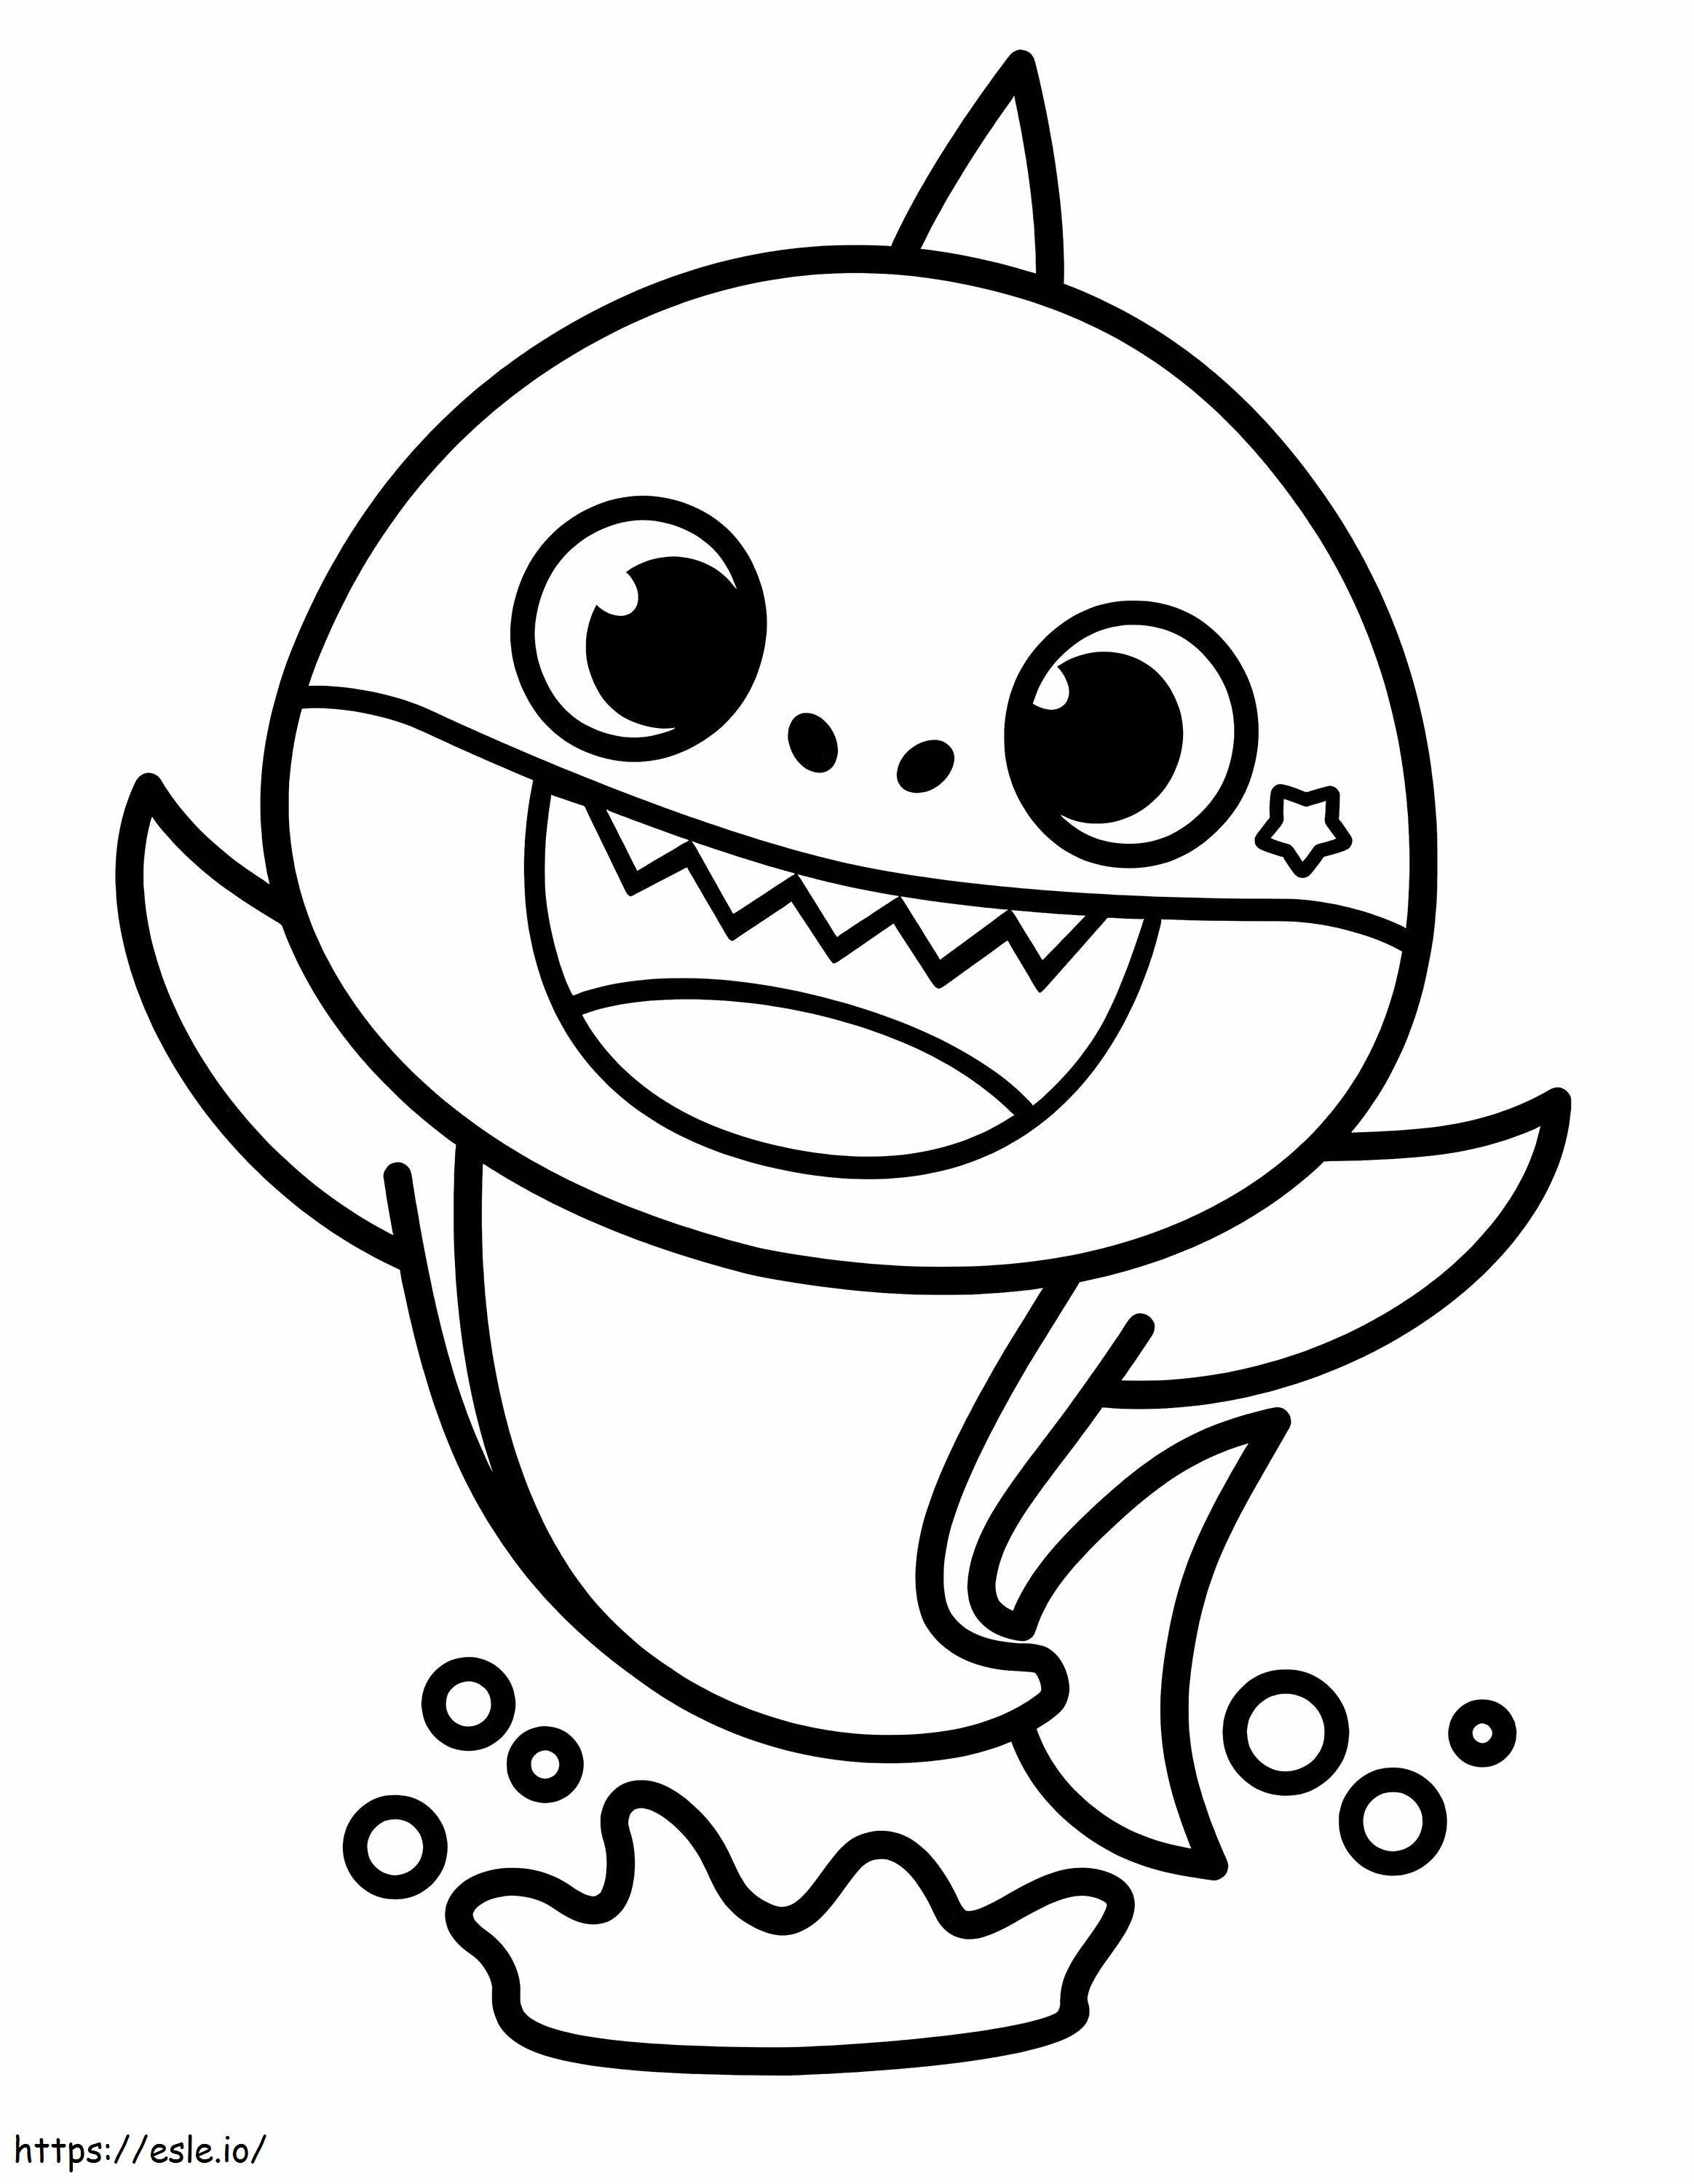 Coloriage Bébé requin saute à imprimer dessin